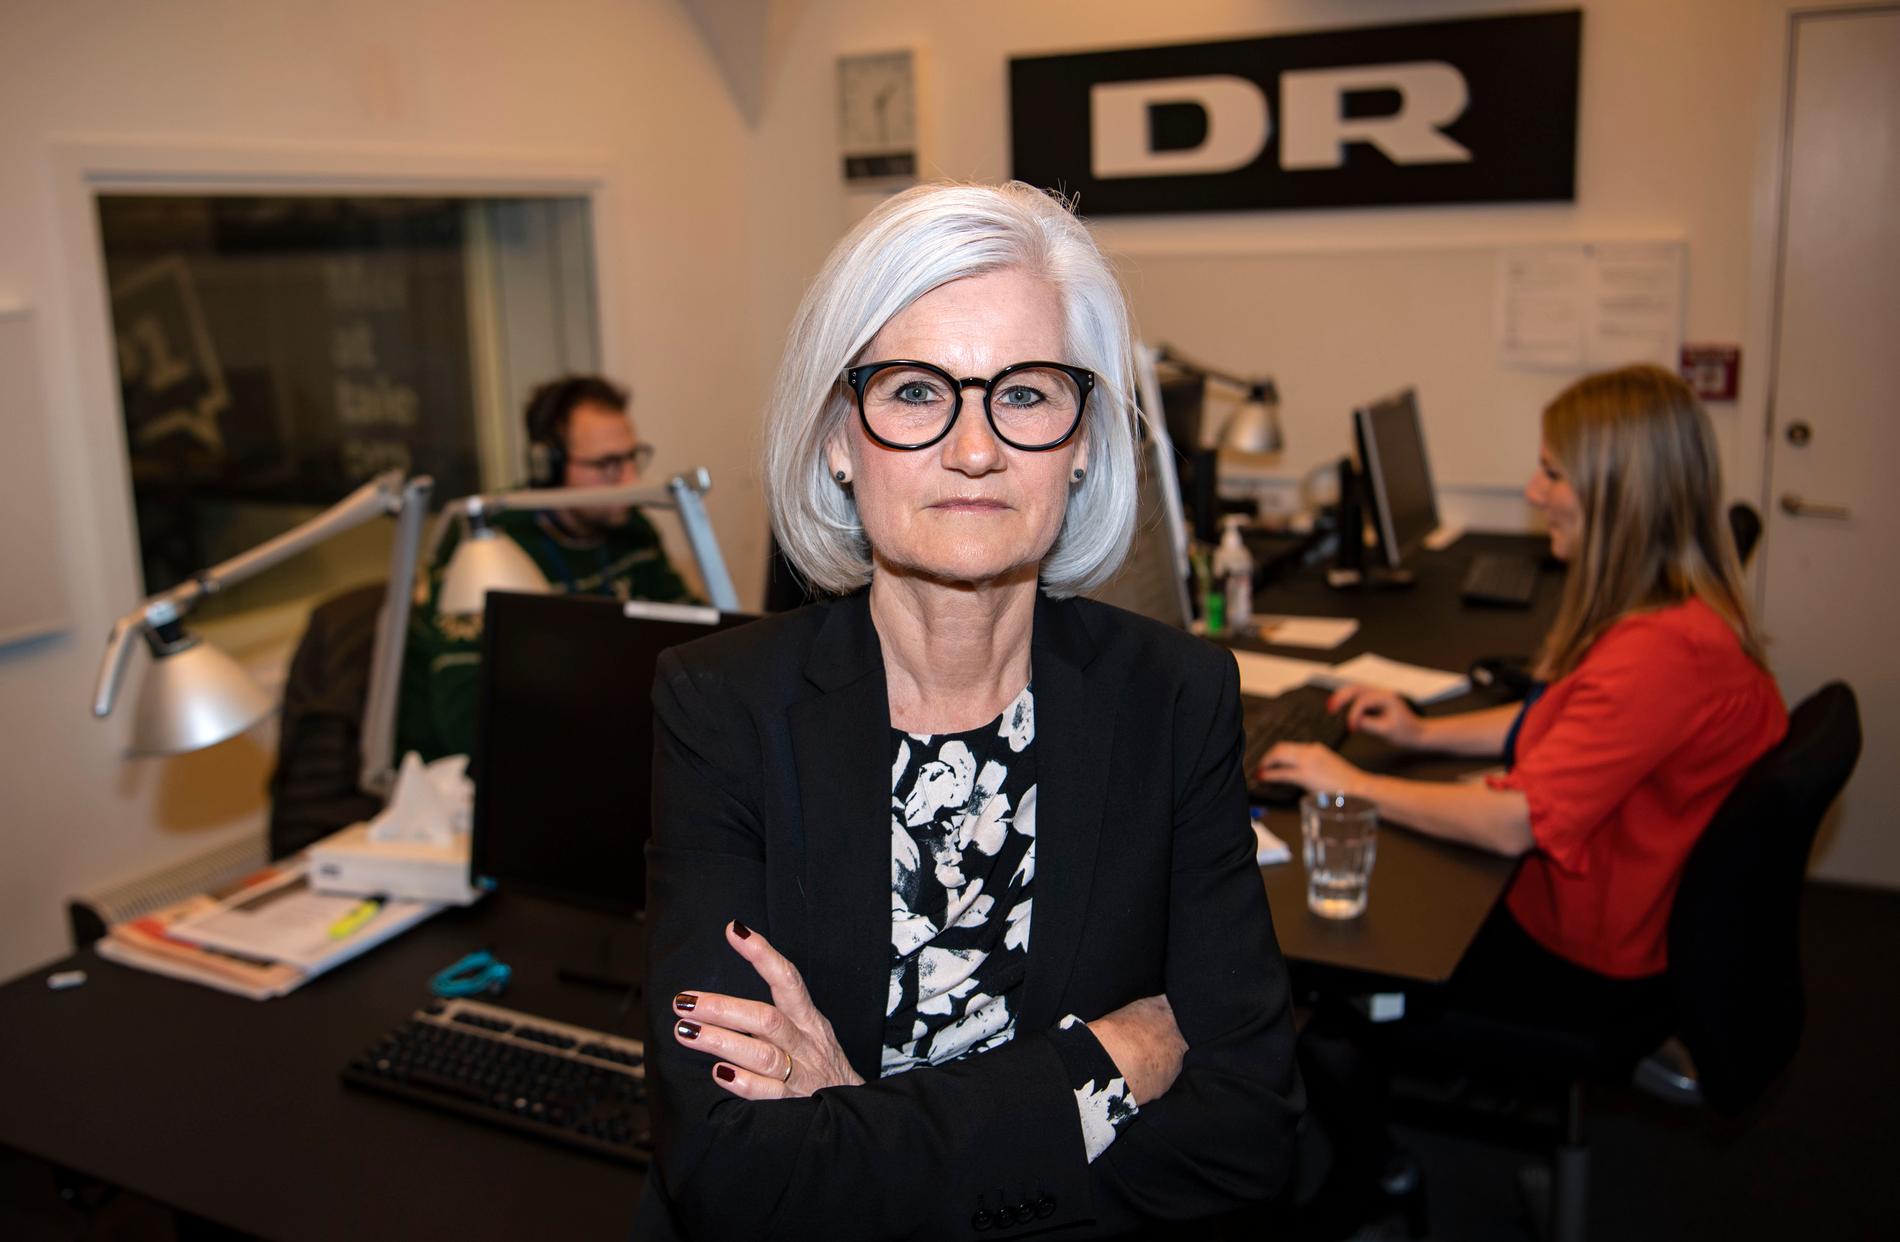 "Ska man tro opinionsmätningarna så står Mette Fredriksen stark. Men det är fortfarande många väljare som inte har bestämt sig", säger Christine Cordsen, journalist på Danmarks radio.